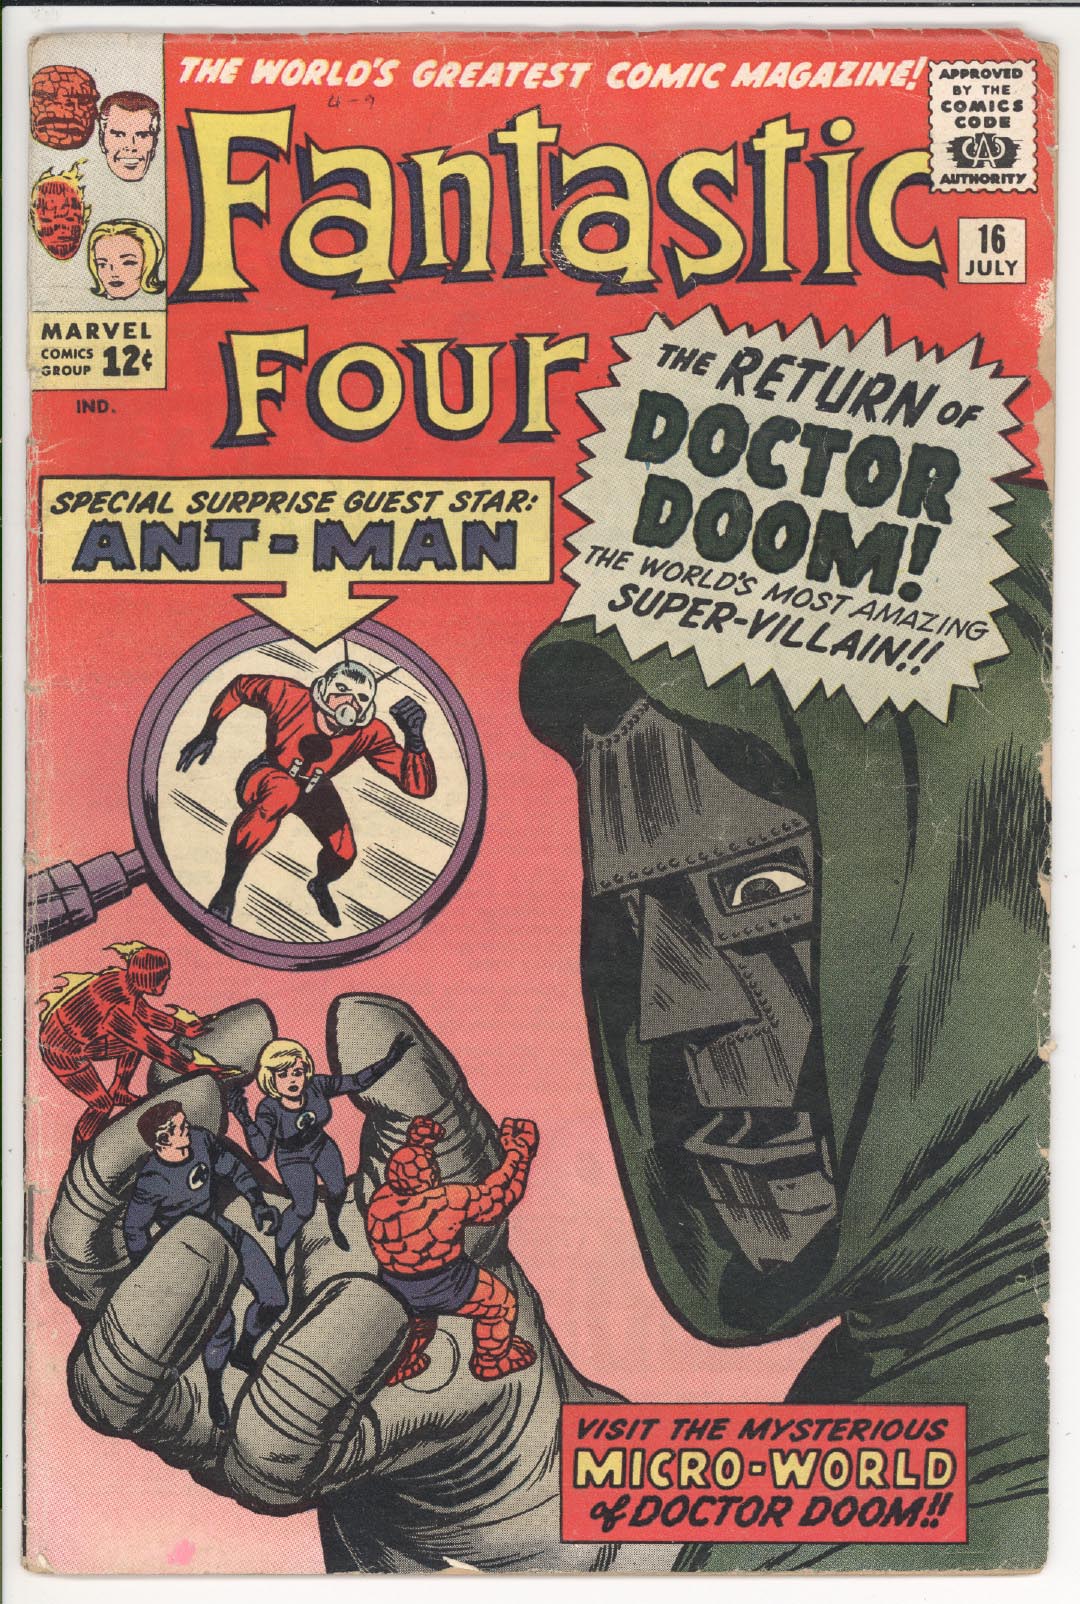 Fantastic Four #16 front